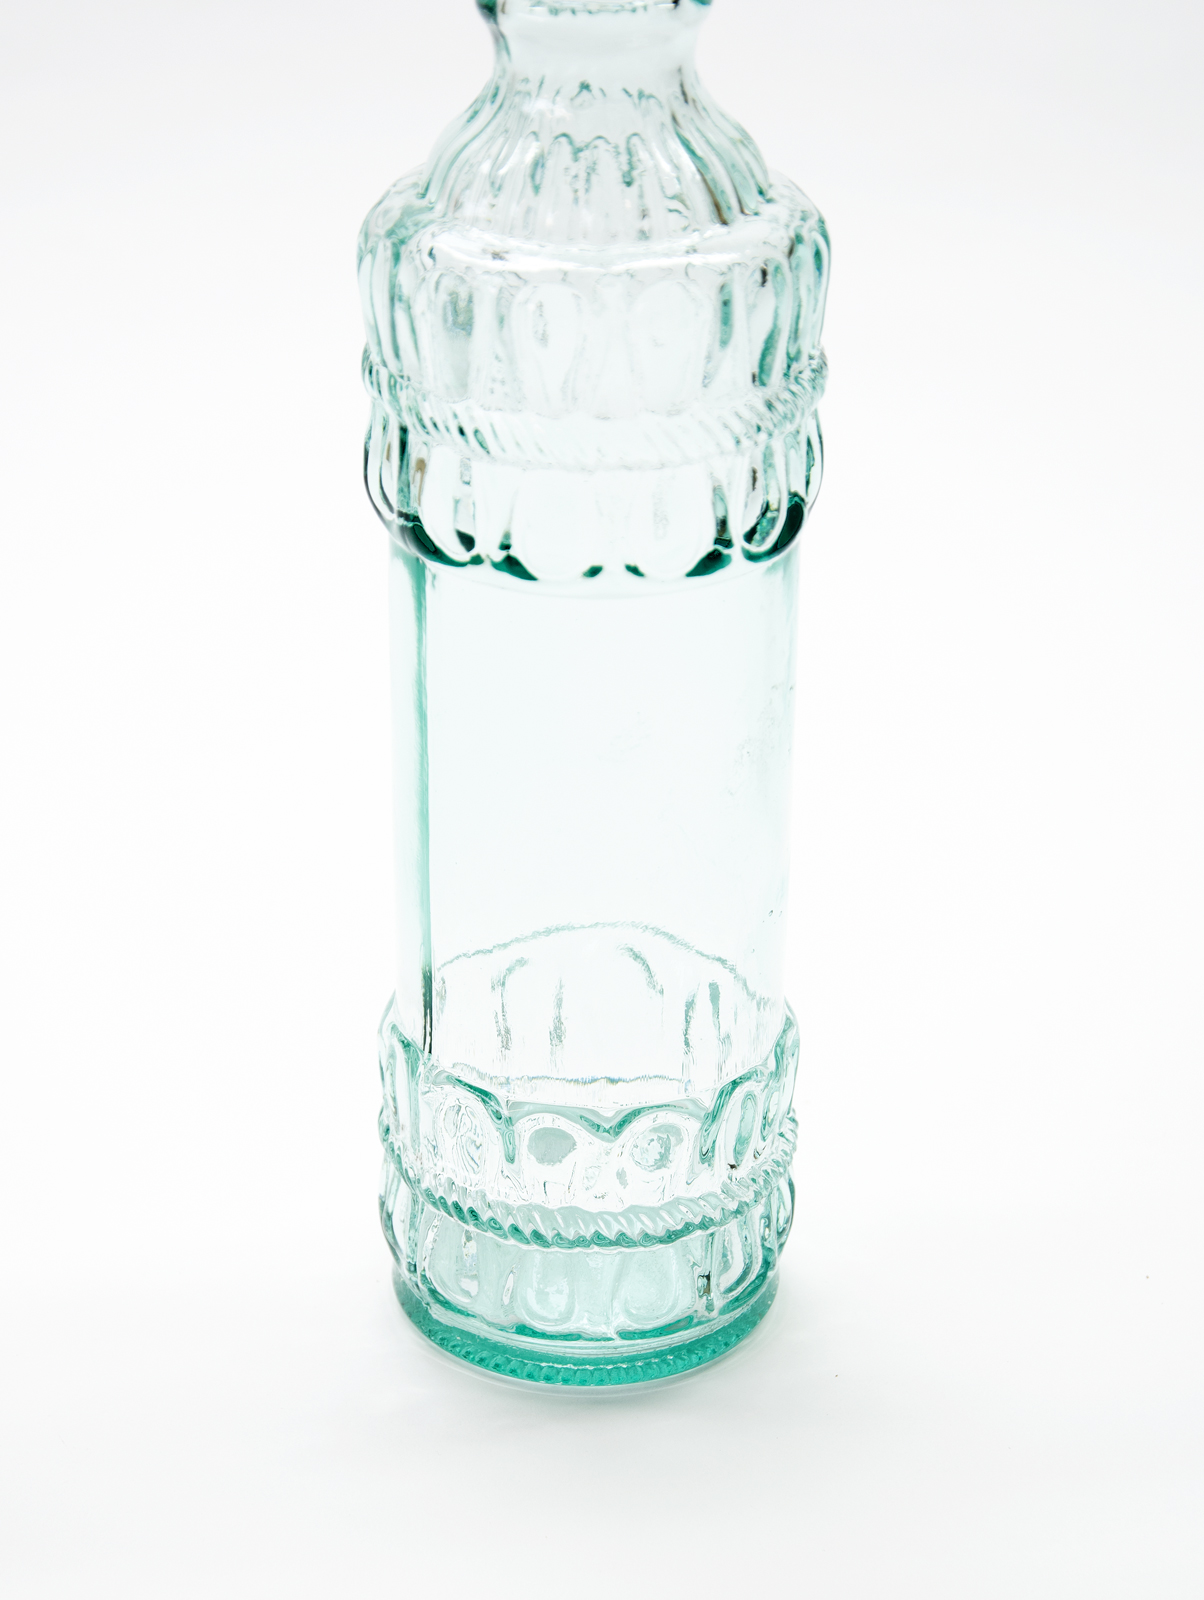 Ecogreen Flasche 700ml mit Kork Verschluss Decor